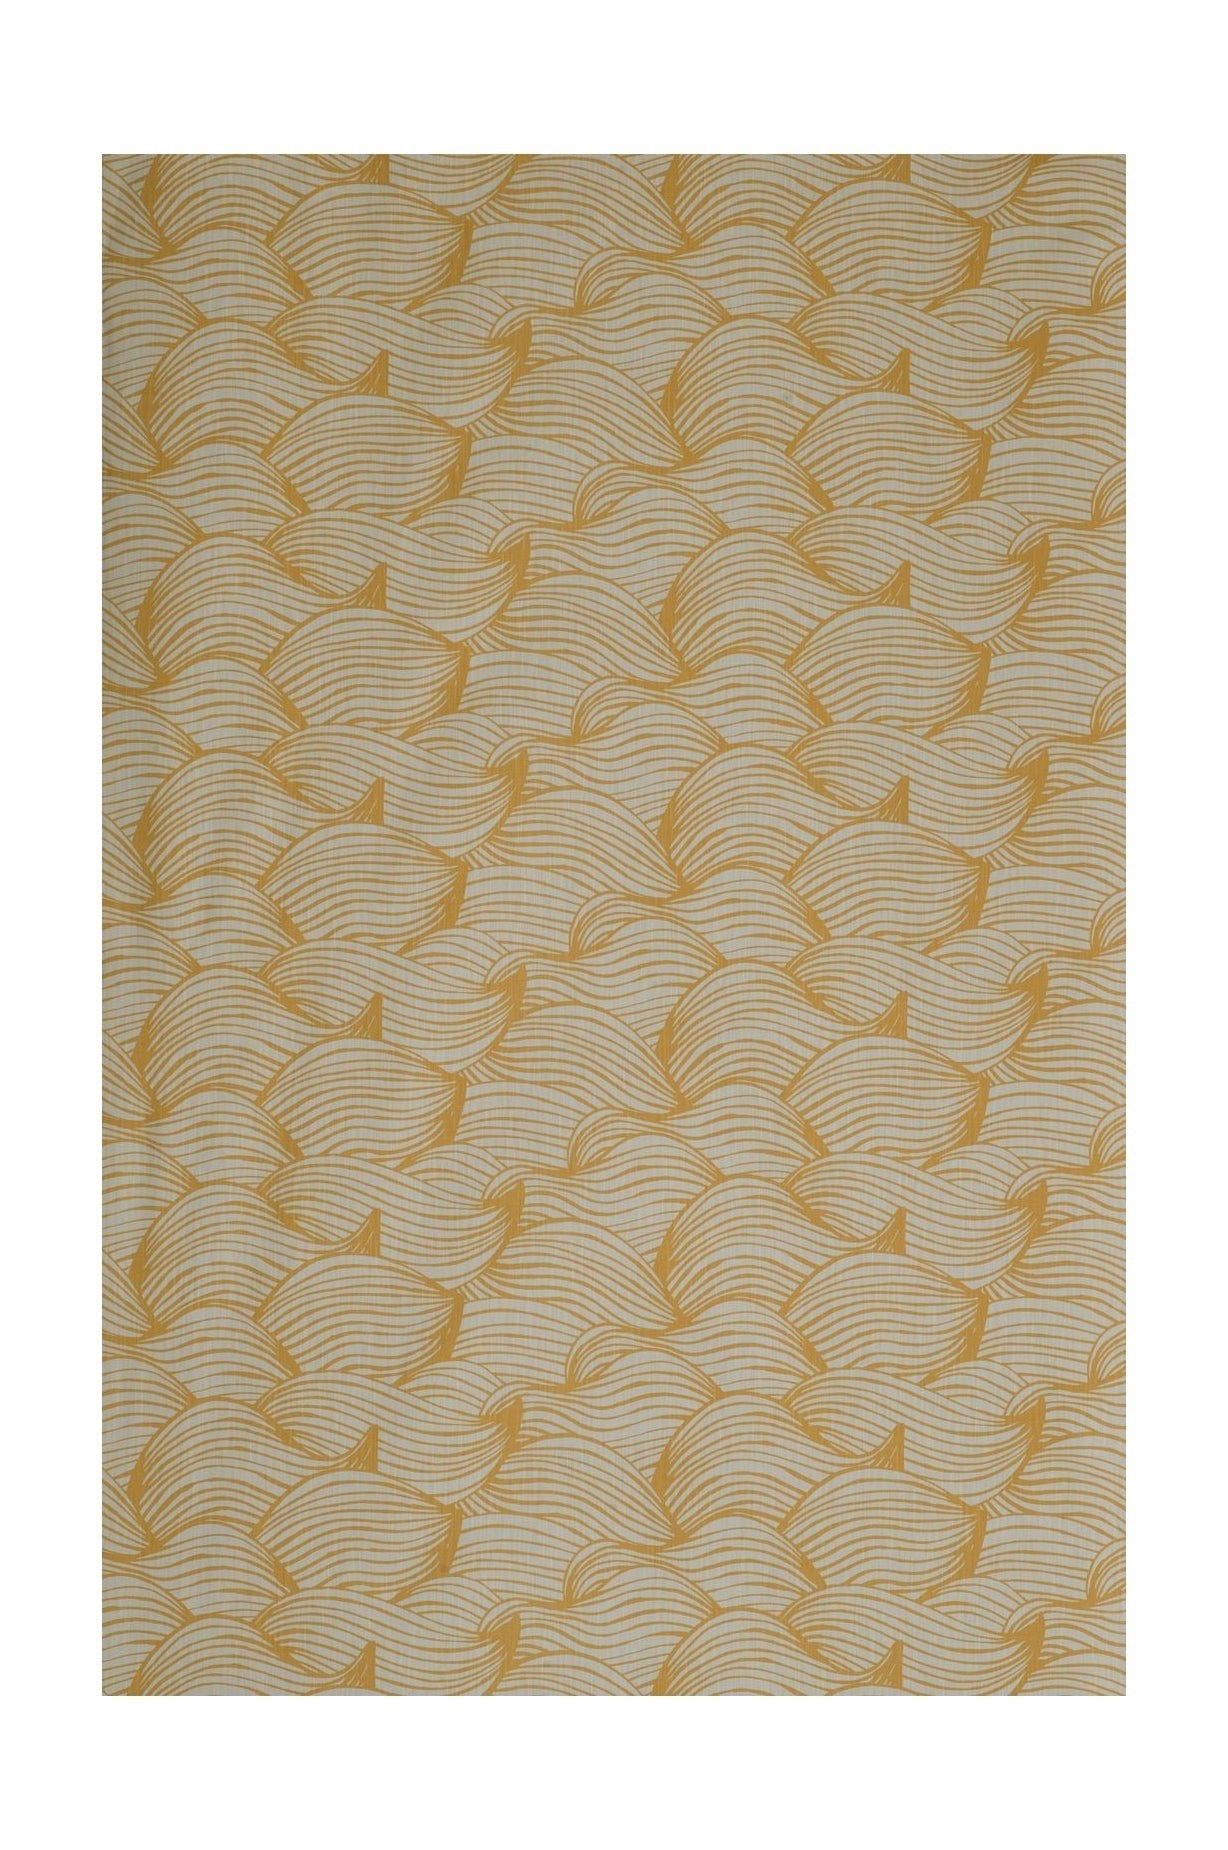 Spira Wave Fabric Ancho 150 cm (precio por metro), miel